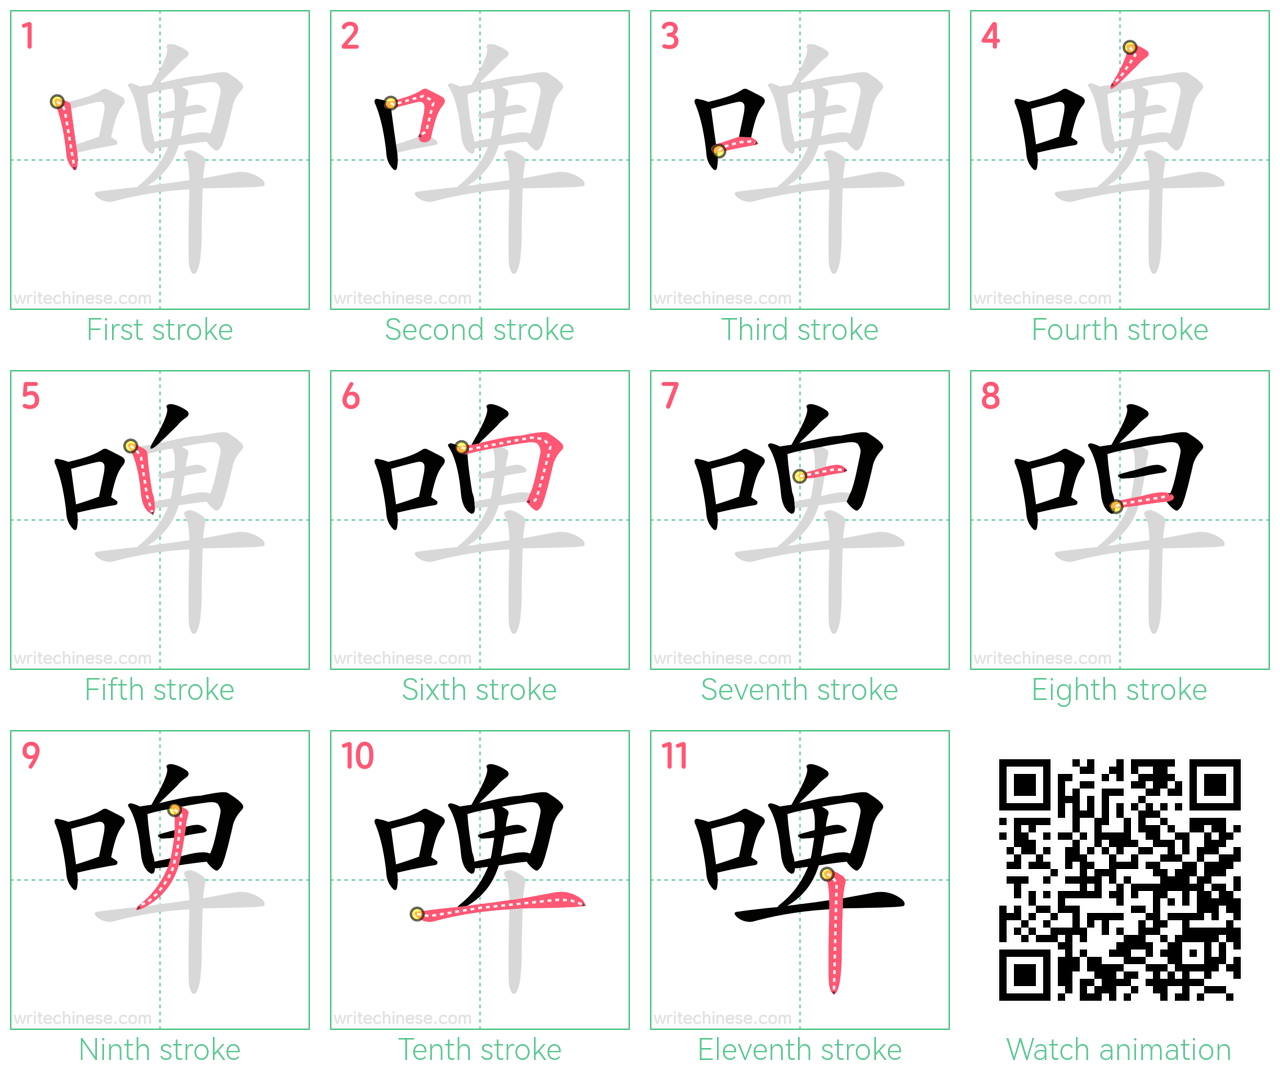 啤 step-by-step stroke order diagrams